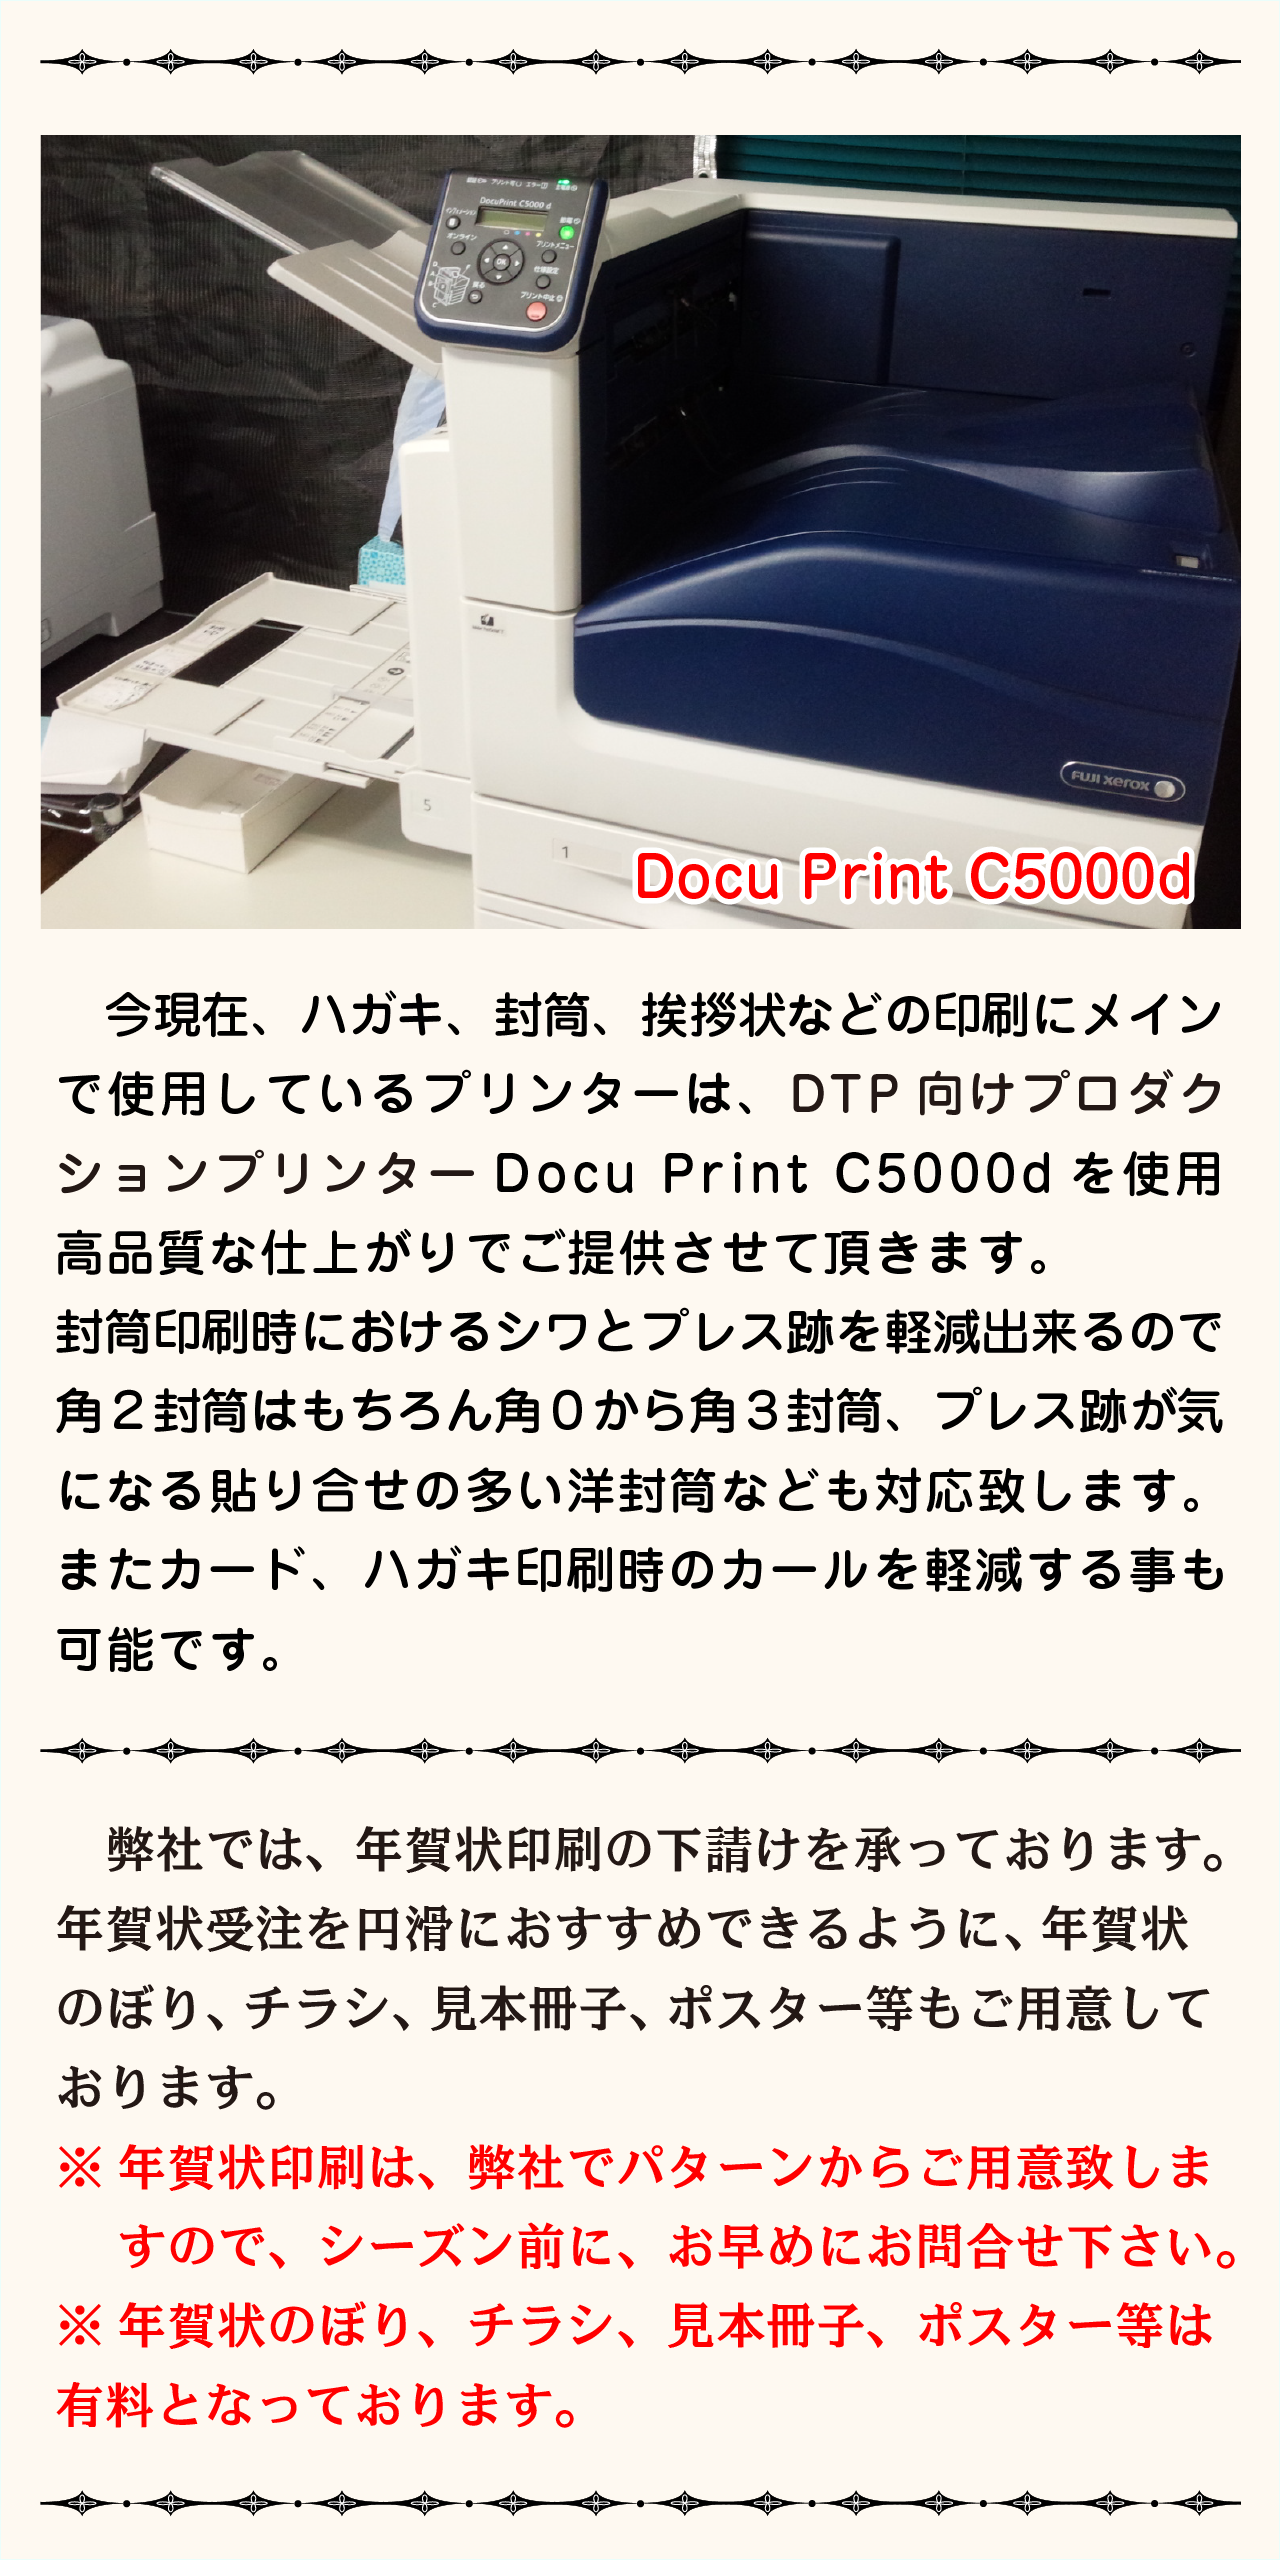 はがき、封筒の印刷は高性能DocuPrintC5000dにておこなっています。